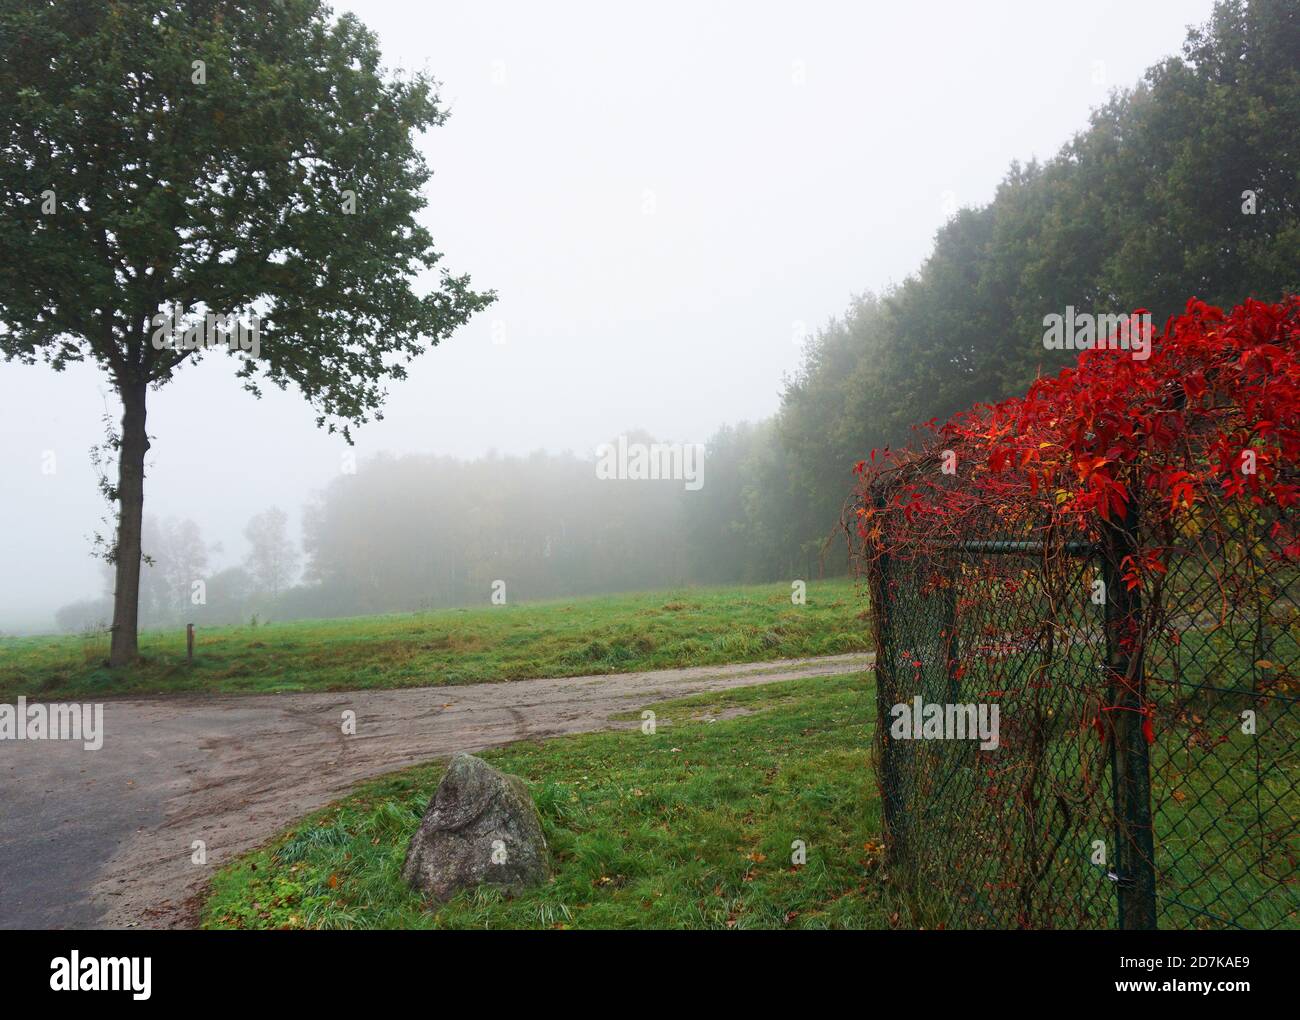 Una recinzione sopravuta di vite rossa, un albero, erba, una strada e un paesaggio nella nebbia. L'inizio dell'autunno. Foto Stock